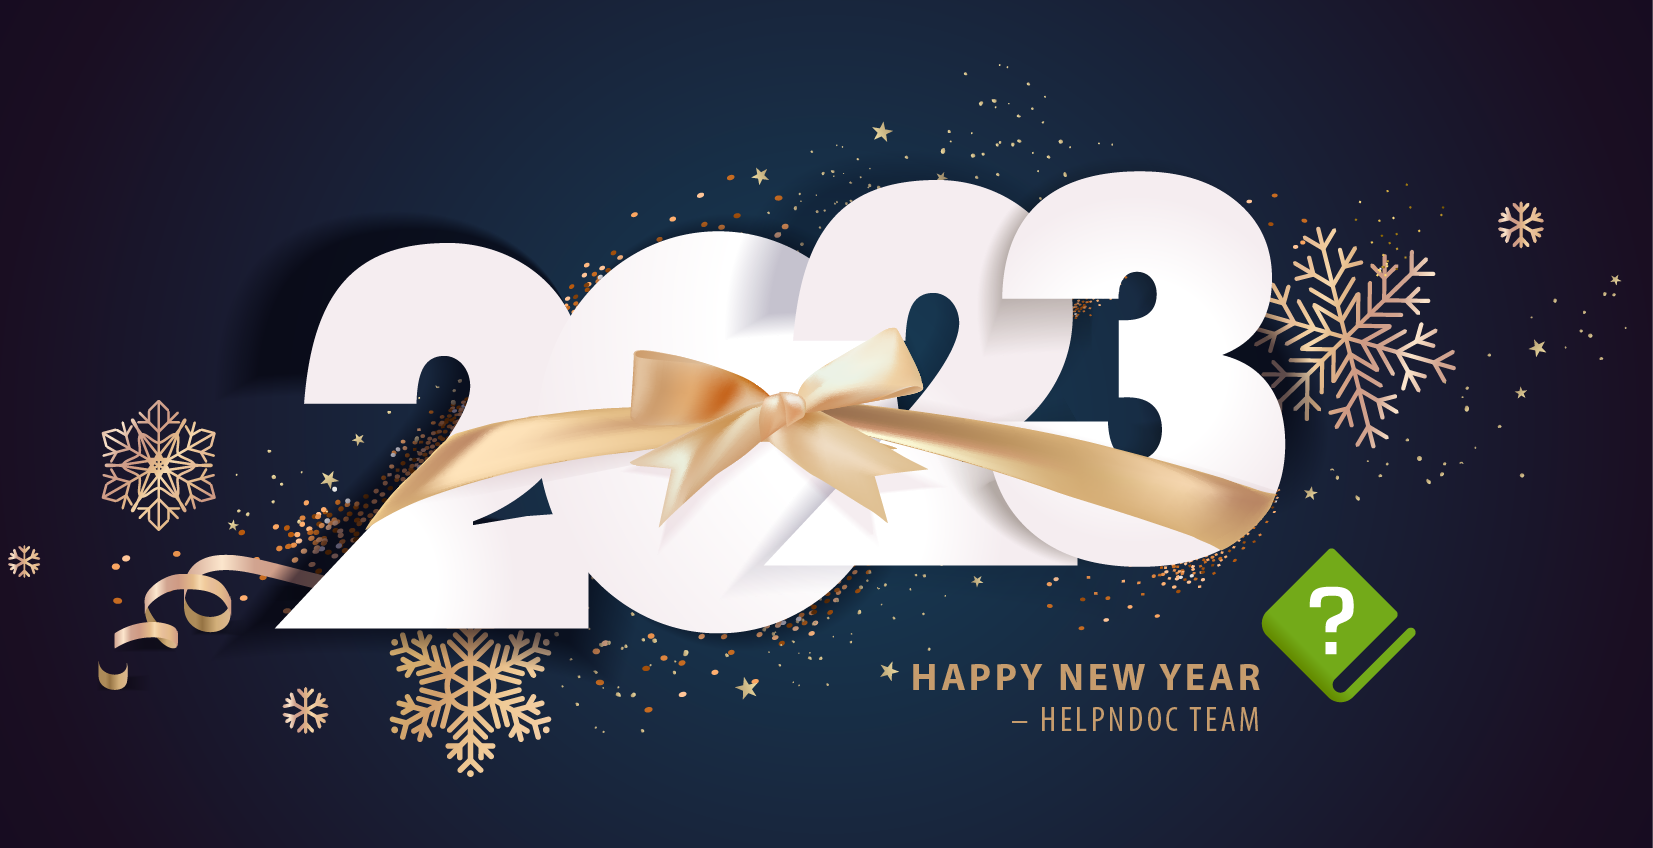 Feliz año nuevo 2023 de parte del equipo de HelpNDoc